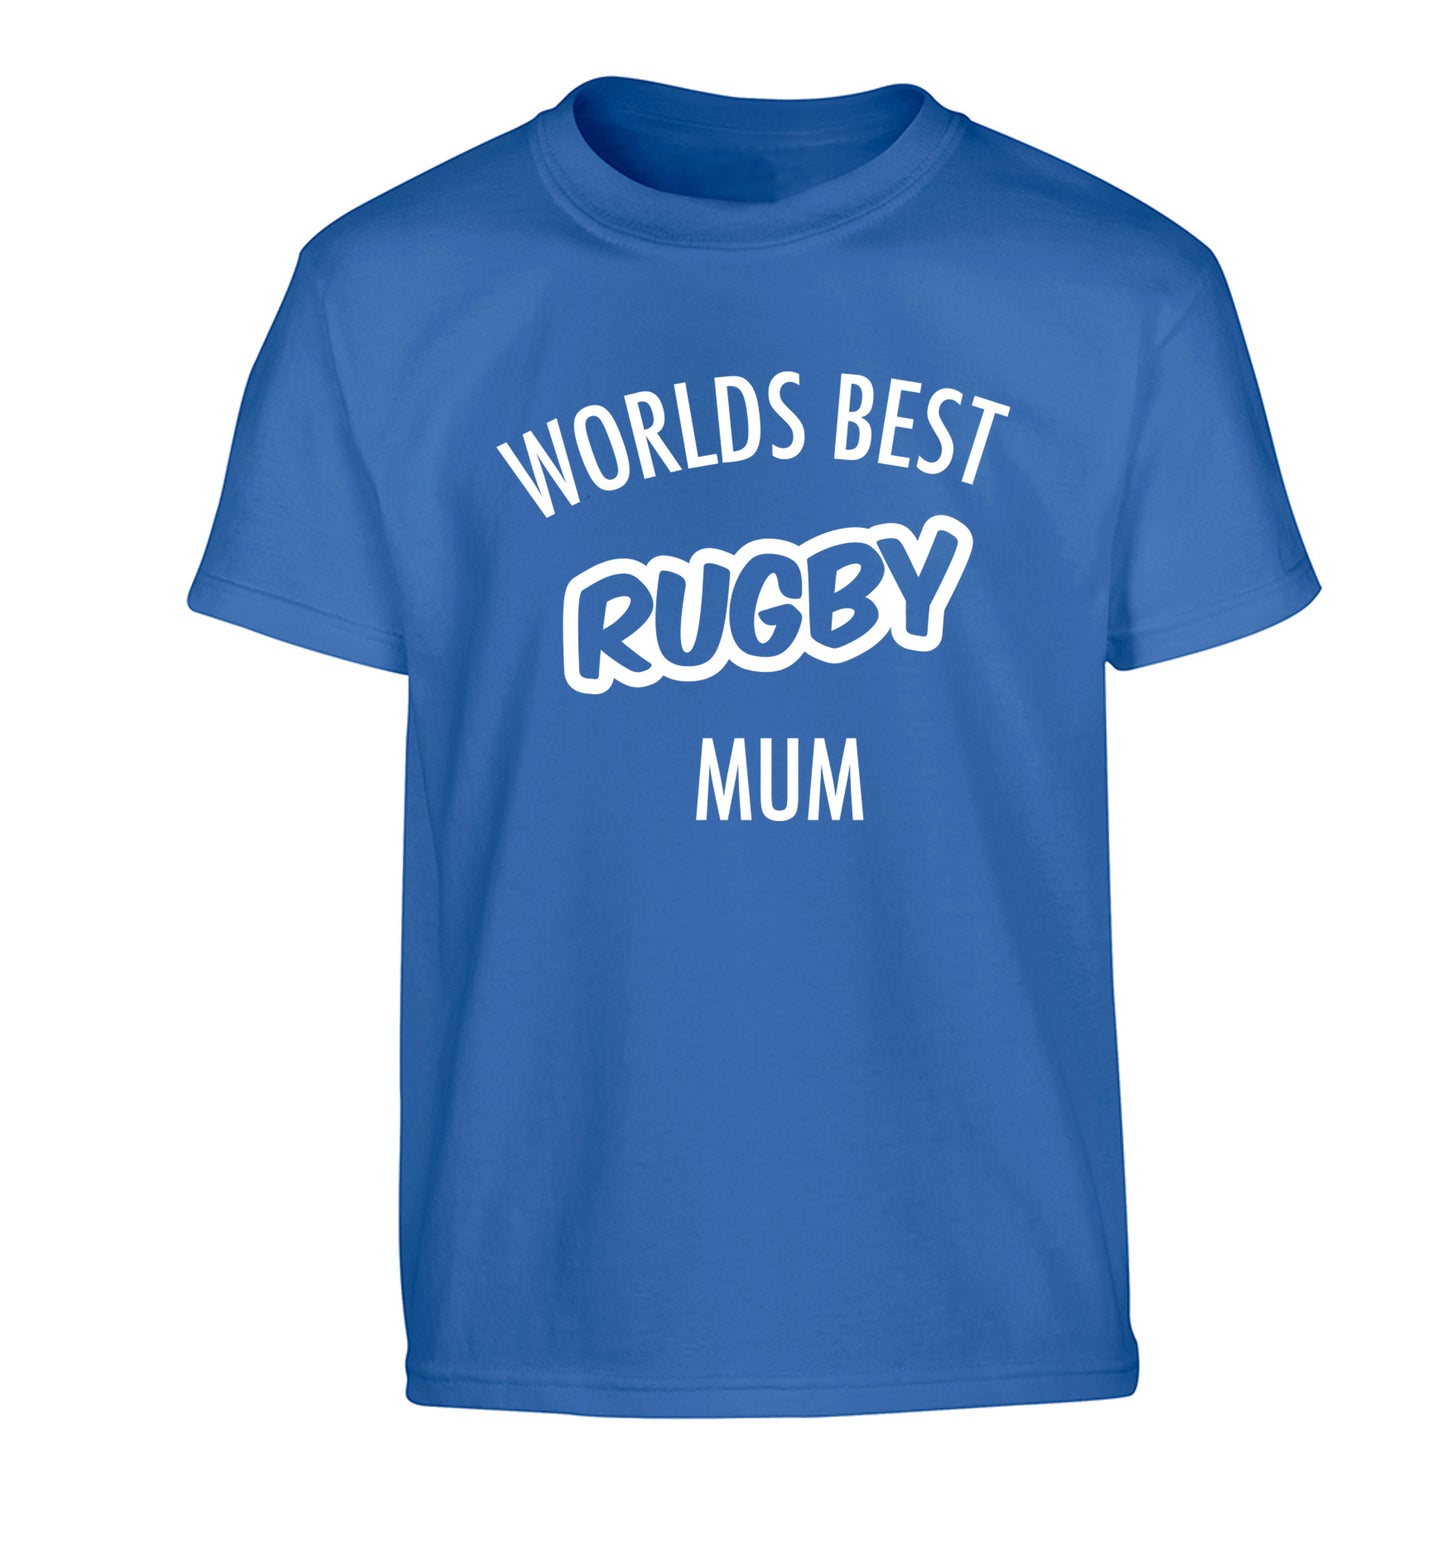 Worlds best rugby mum Children's blue Tshirt 12-13 Years